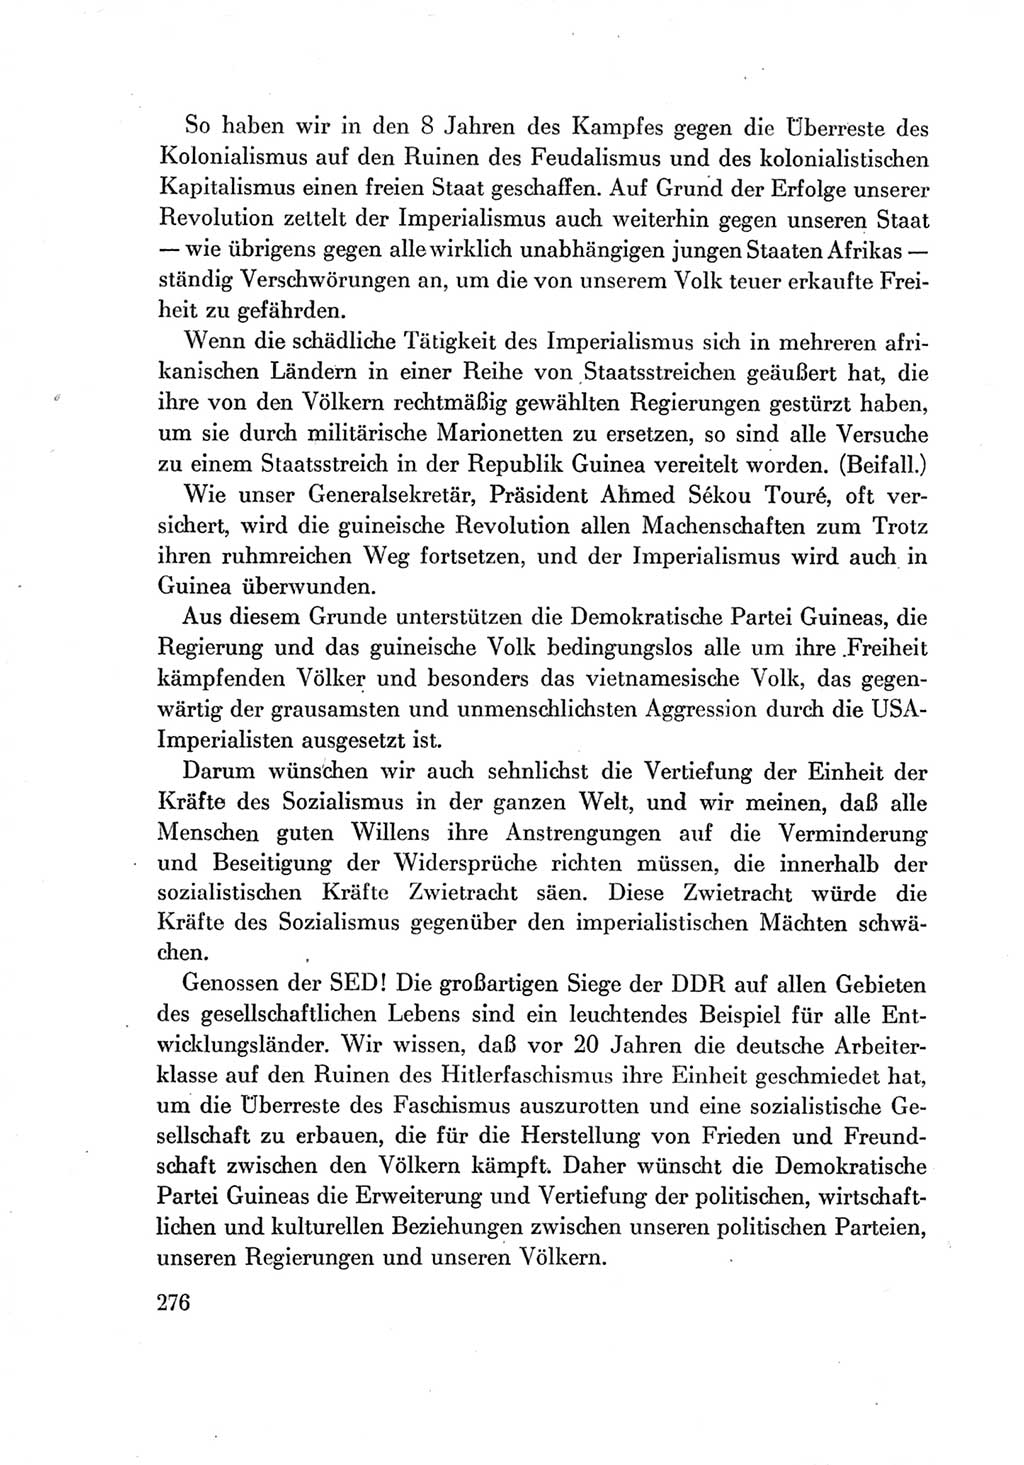 Protokoll der Verhandlungen des Ⅶ. Parteitages der Sozialistischen Einheitspartei Deutschlands (SED) [Deutsche Demokratische Republik (DDR)] 1967, Band Ⅱ, Seite 276 (Prot. Verh. Ⅶ. PT SED DDR 1967, Bd. Ⅱ, S. 276)